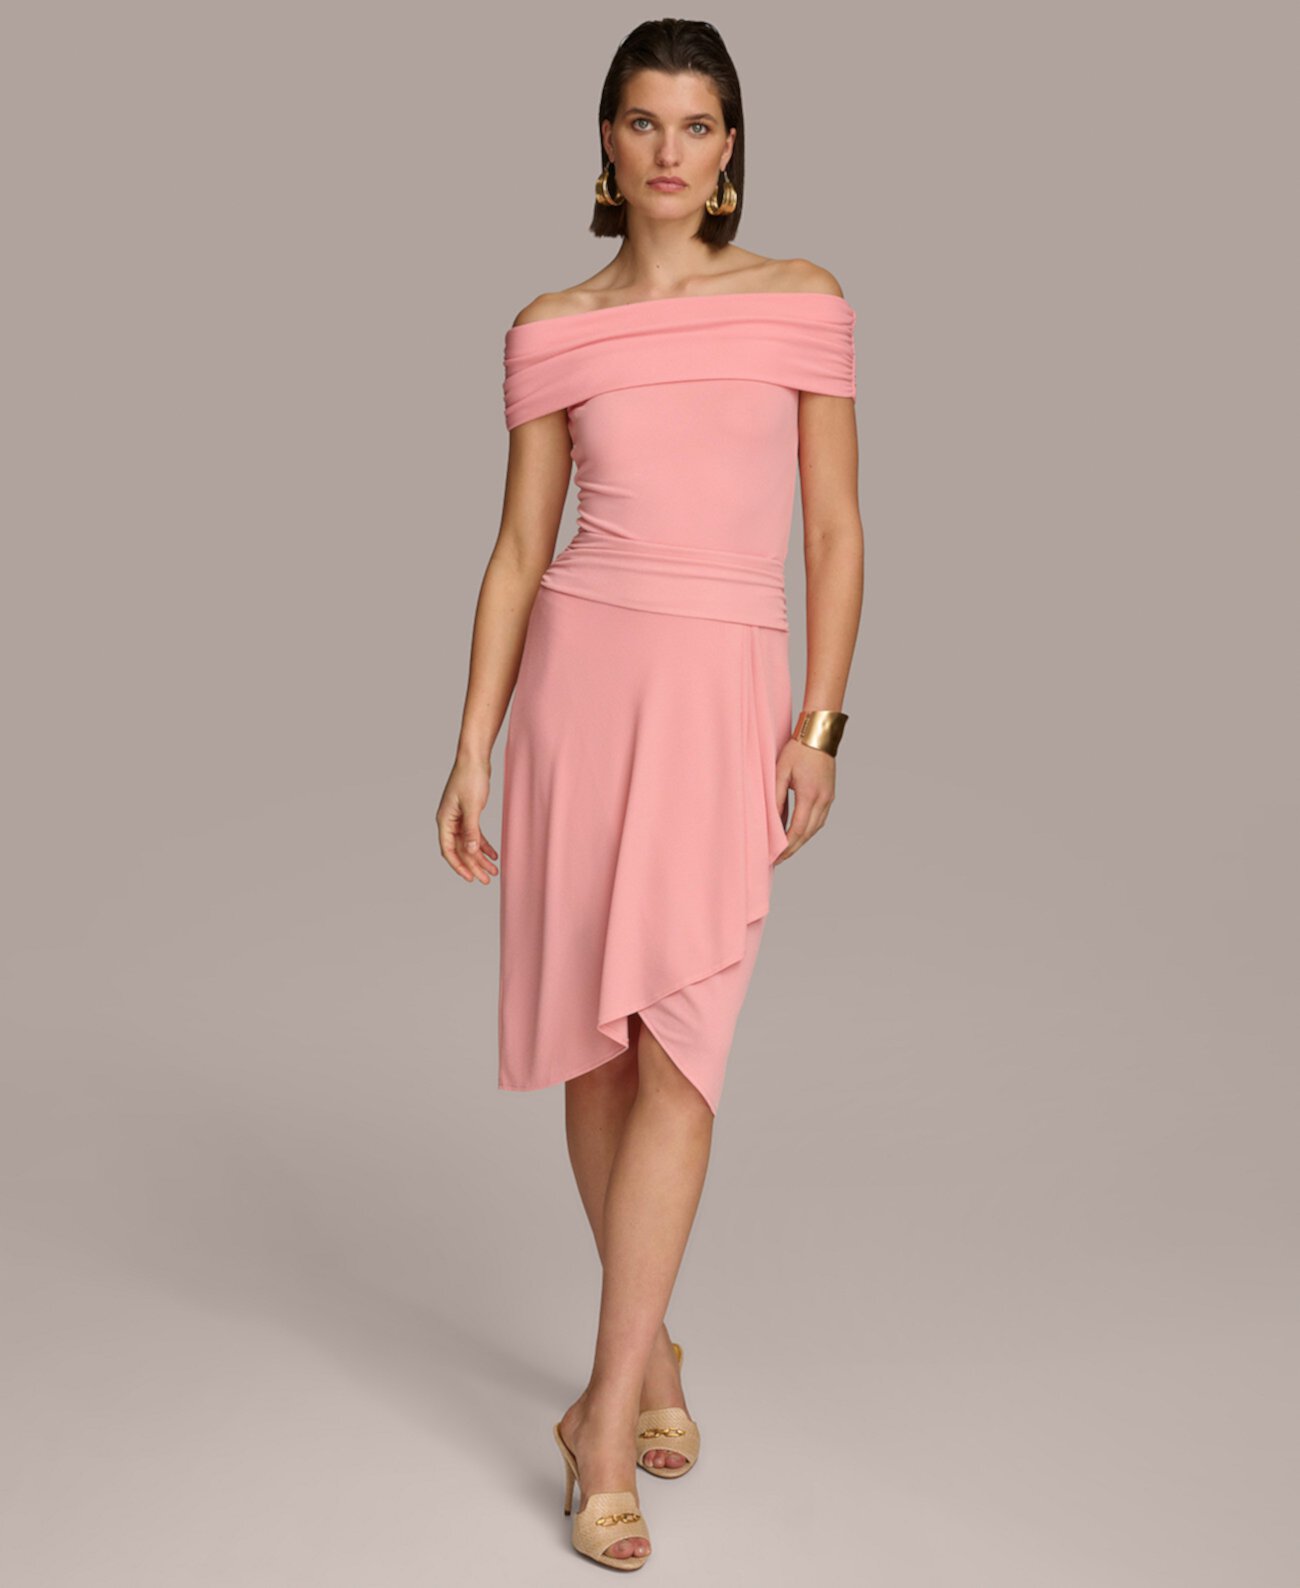 Женская юбка с искусственным запахом Donna Karan New York